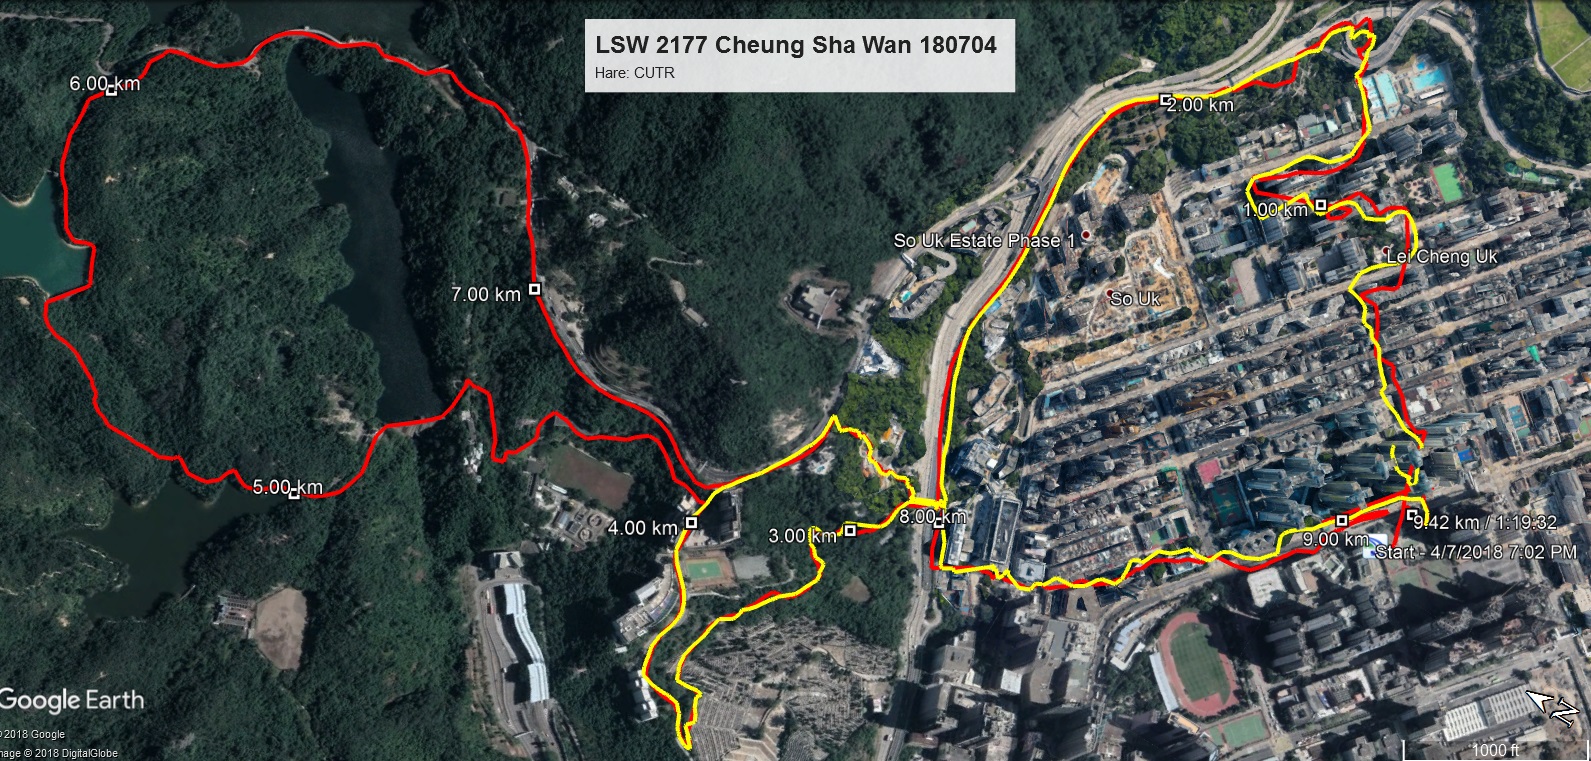 LSW 2177 Cheung Sha Wan 180704 9.42km 76mins